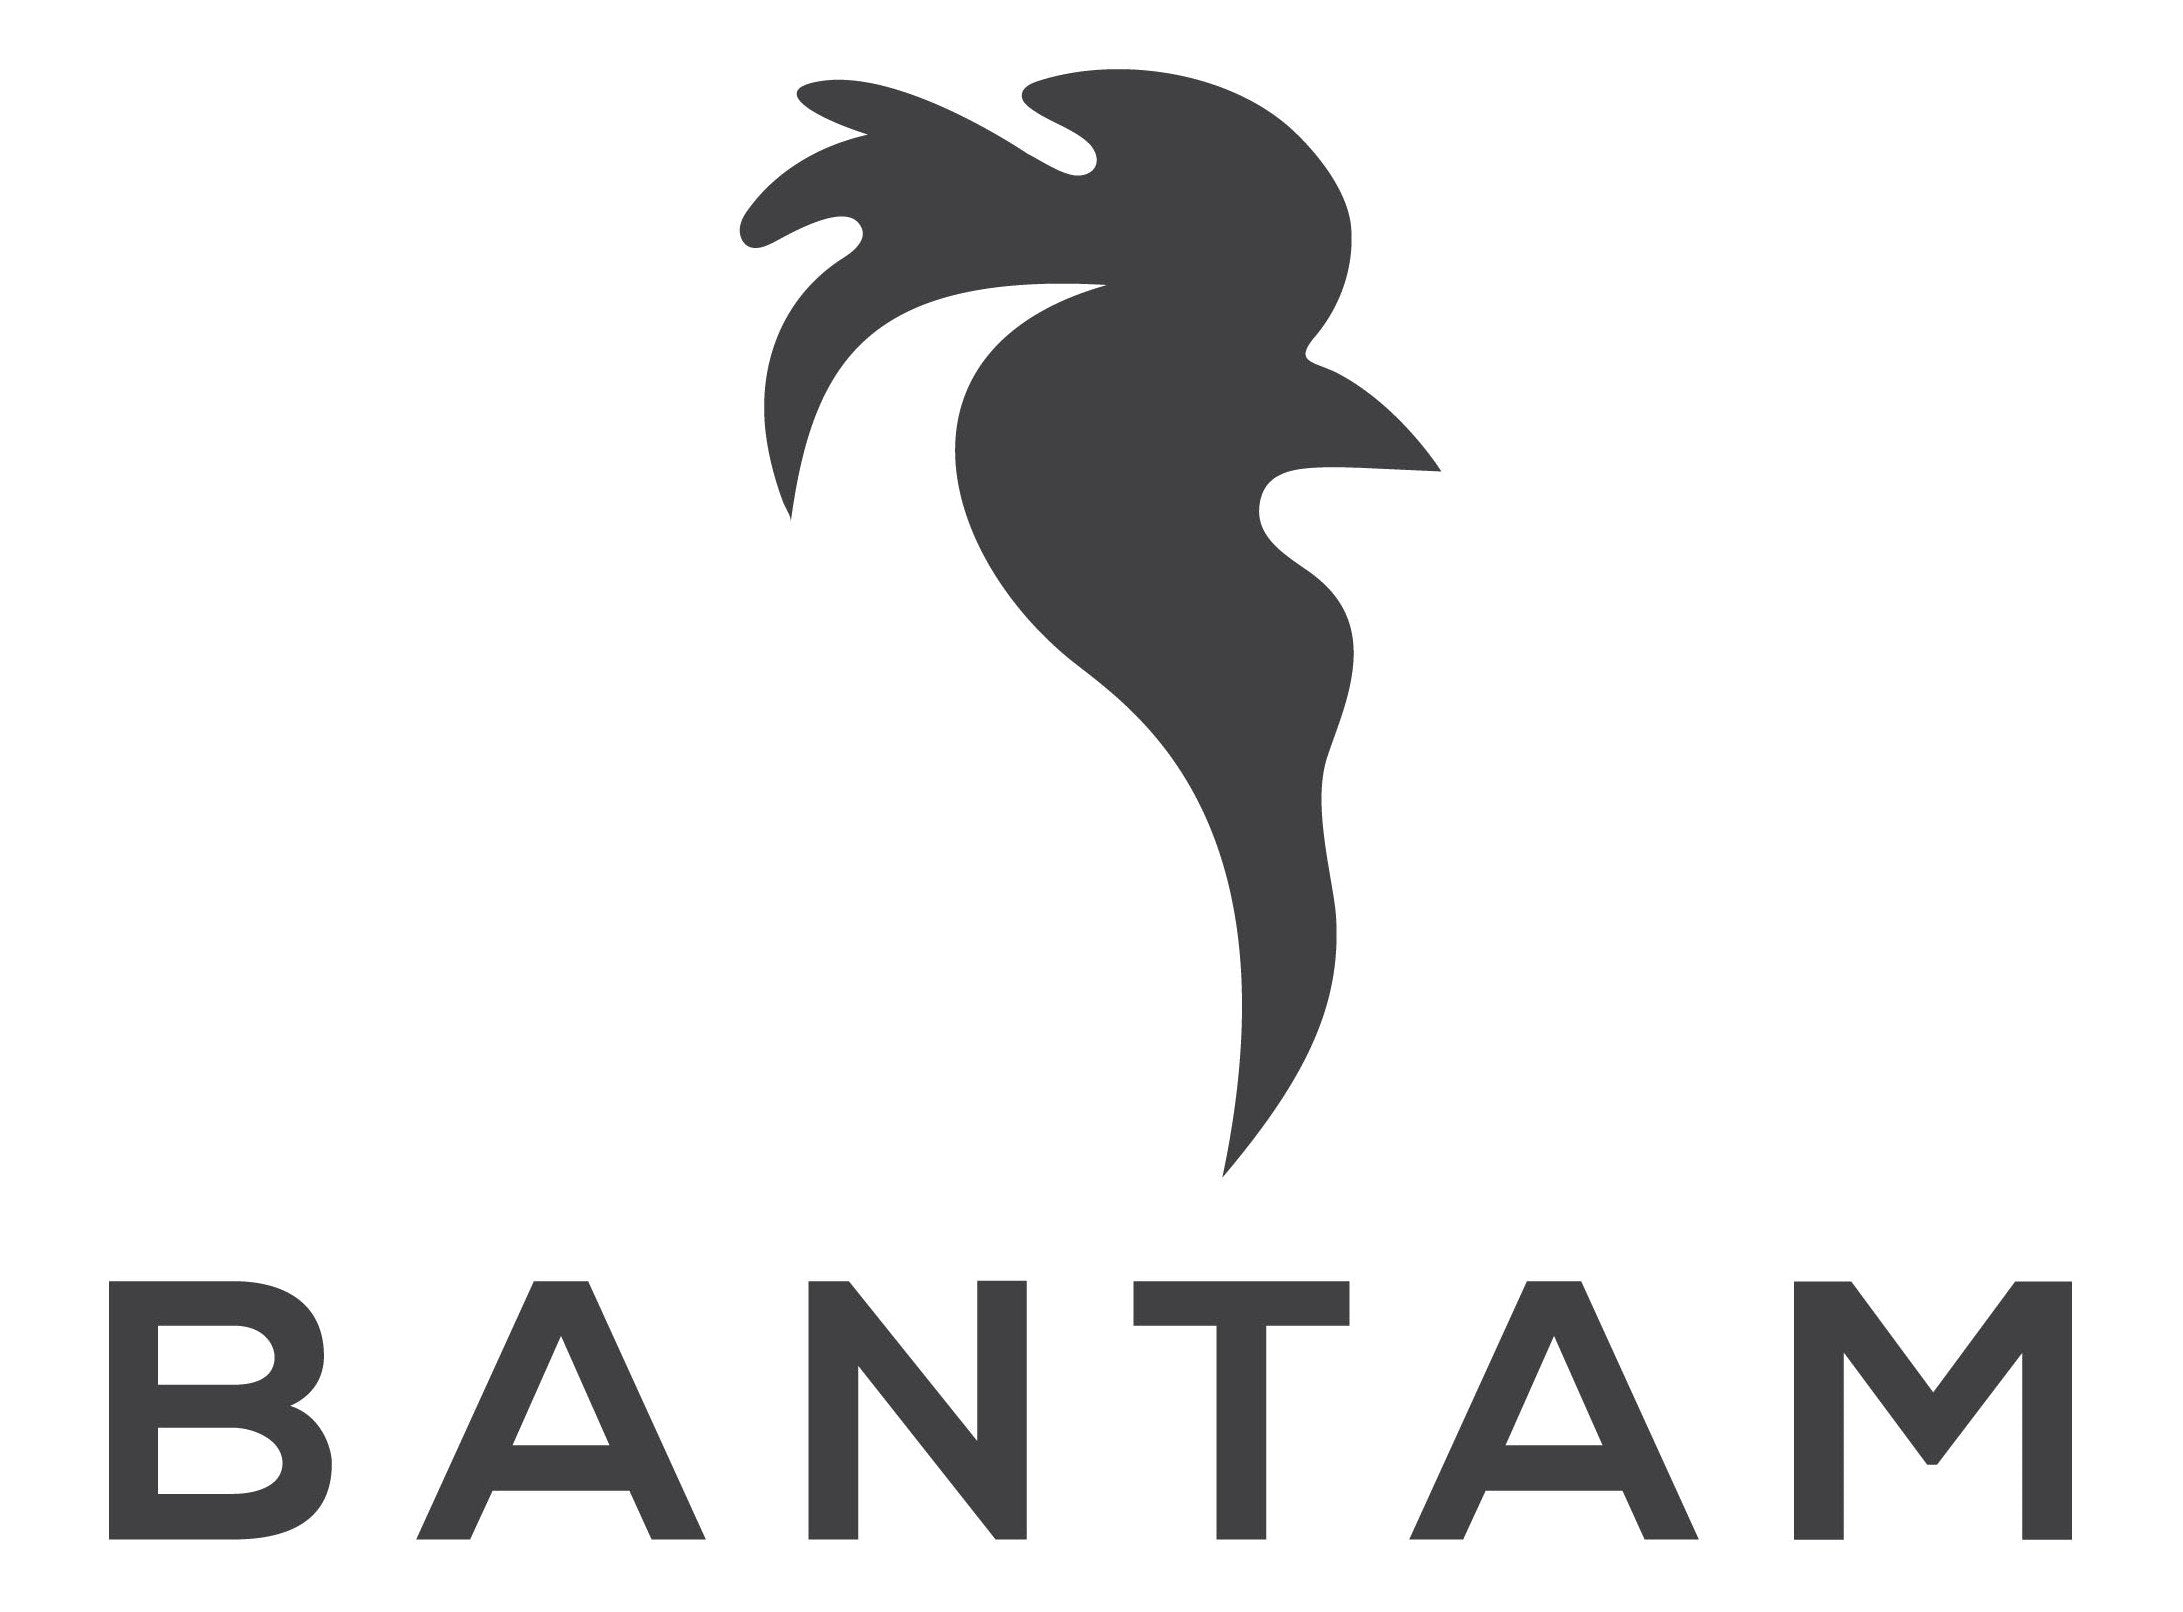 Bantam Clothing